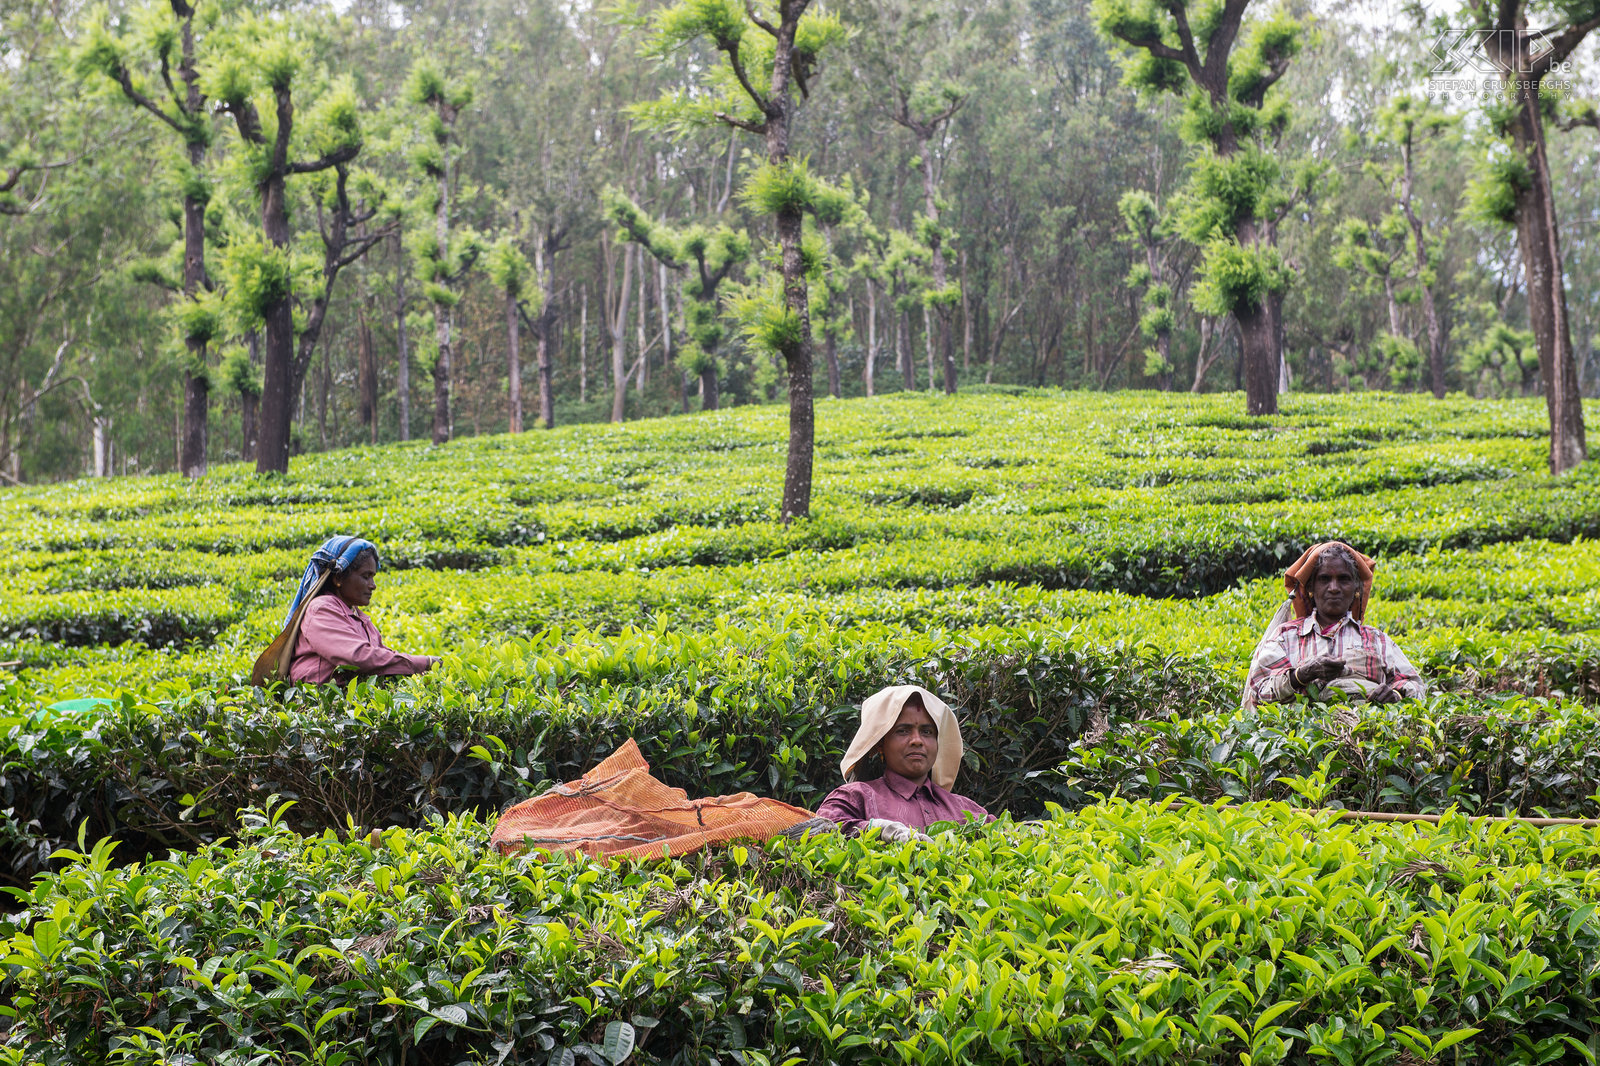 Valparai - Theevelden - Plukkers Indiase vrouwen plukken theeblaadjes in een theeplantage in Valparai . Thee wordt meerdere keren per jaar met de hand geoogst. Niet alle bladeren worden geplukt tijdens het oogsten, maar slechts de jonge en sappige bladeren. Stefan Cruysberghs